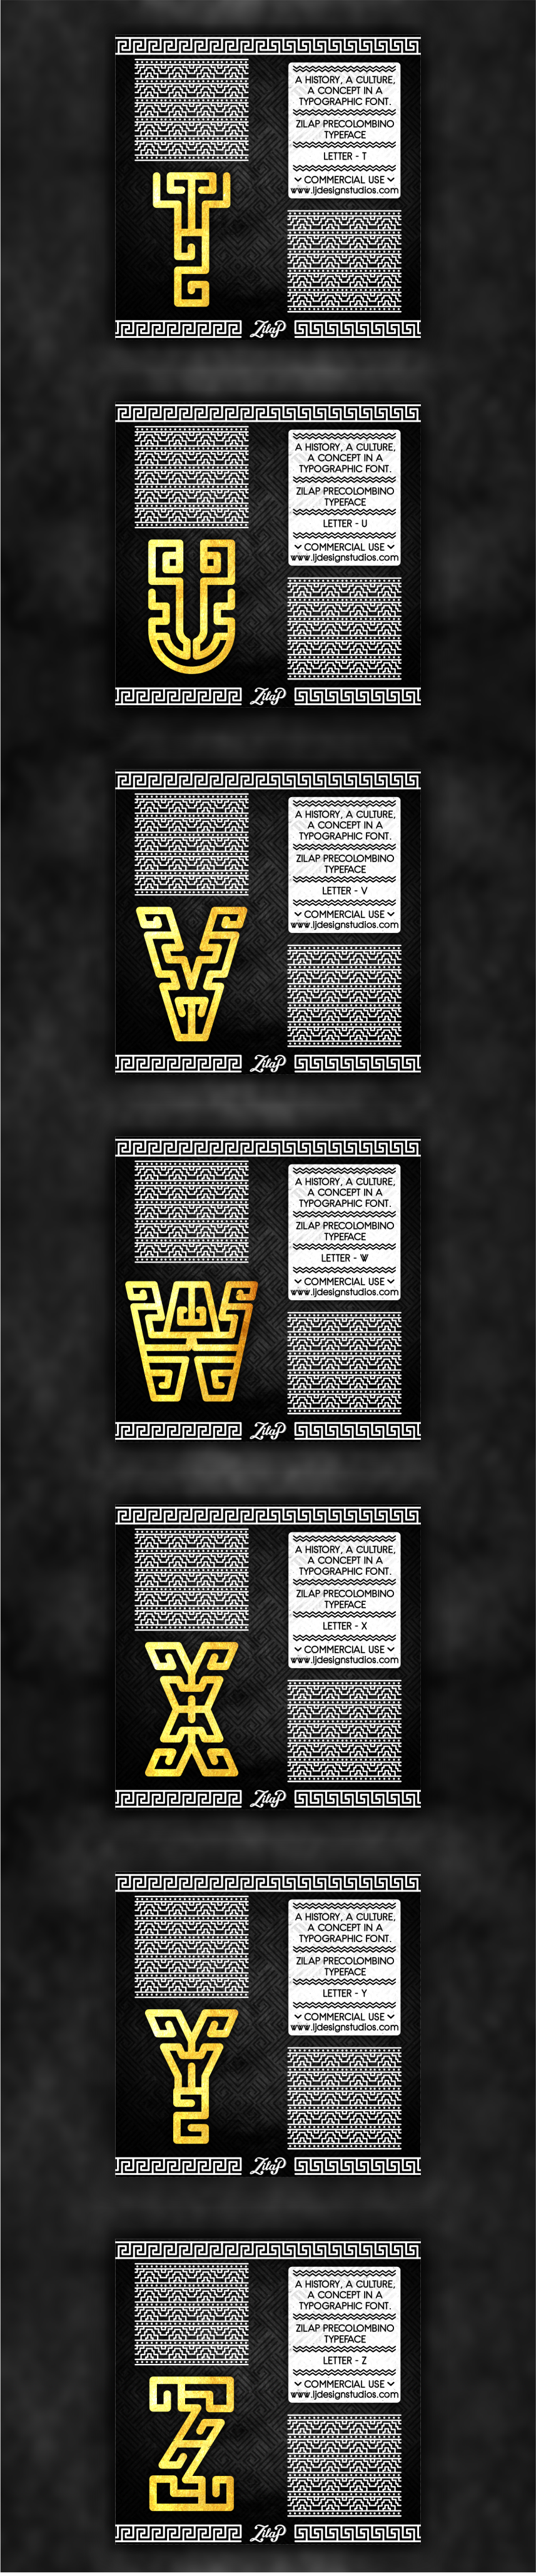 Typeface colombia precolombino cultura historia font Zilap Estudio zilap precolombino arte precolombino typography  